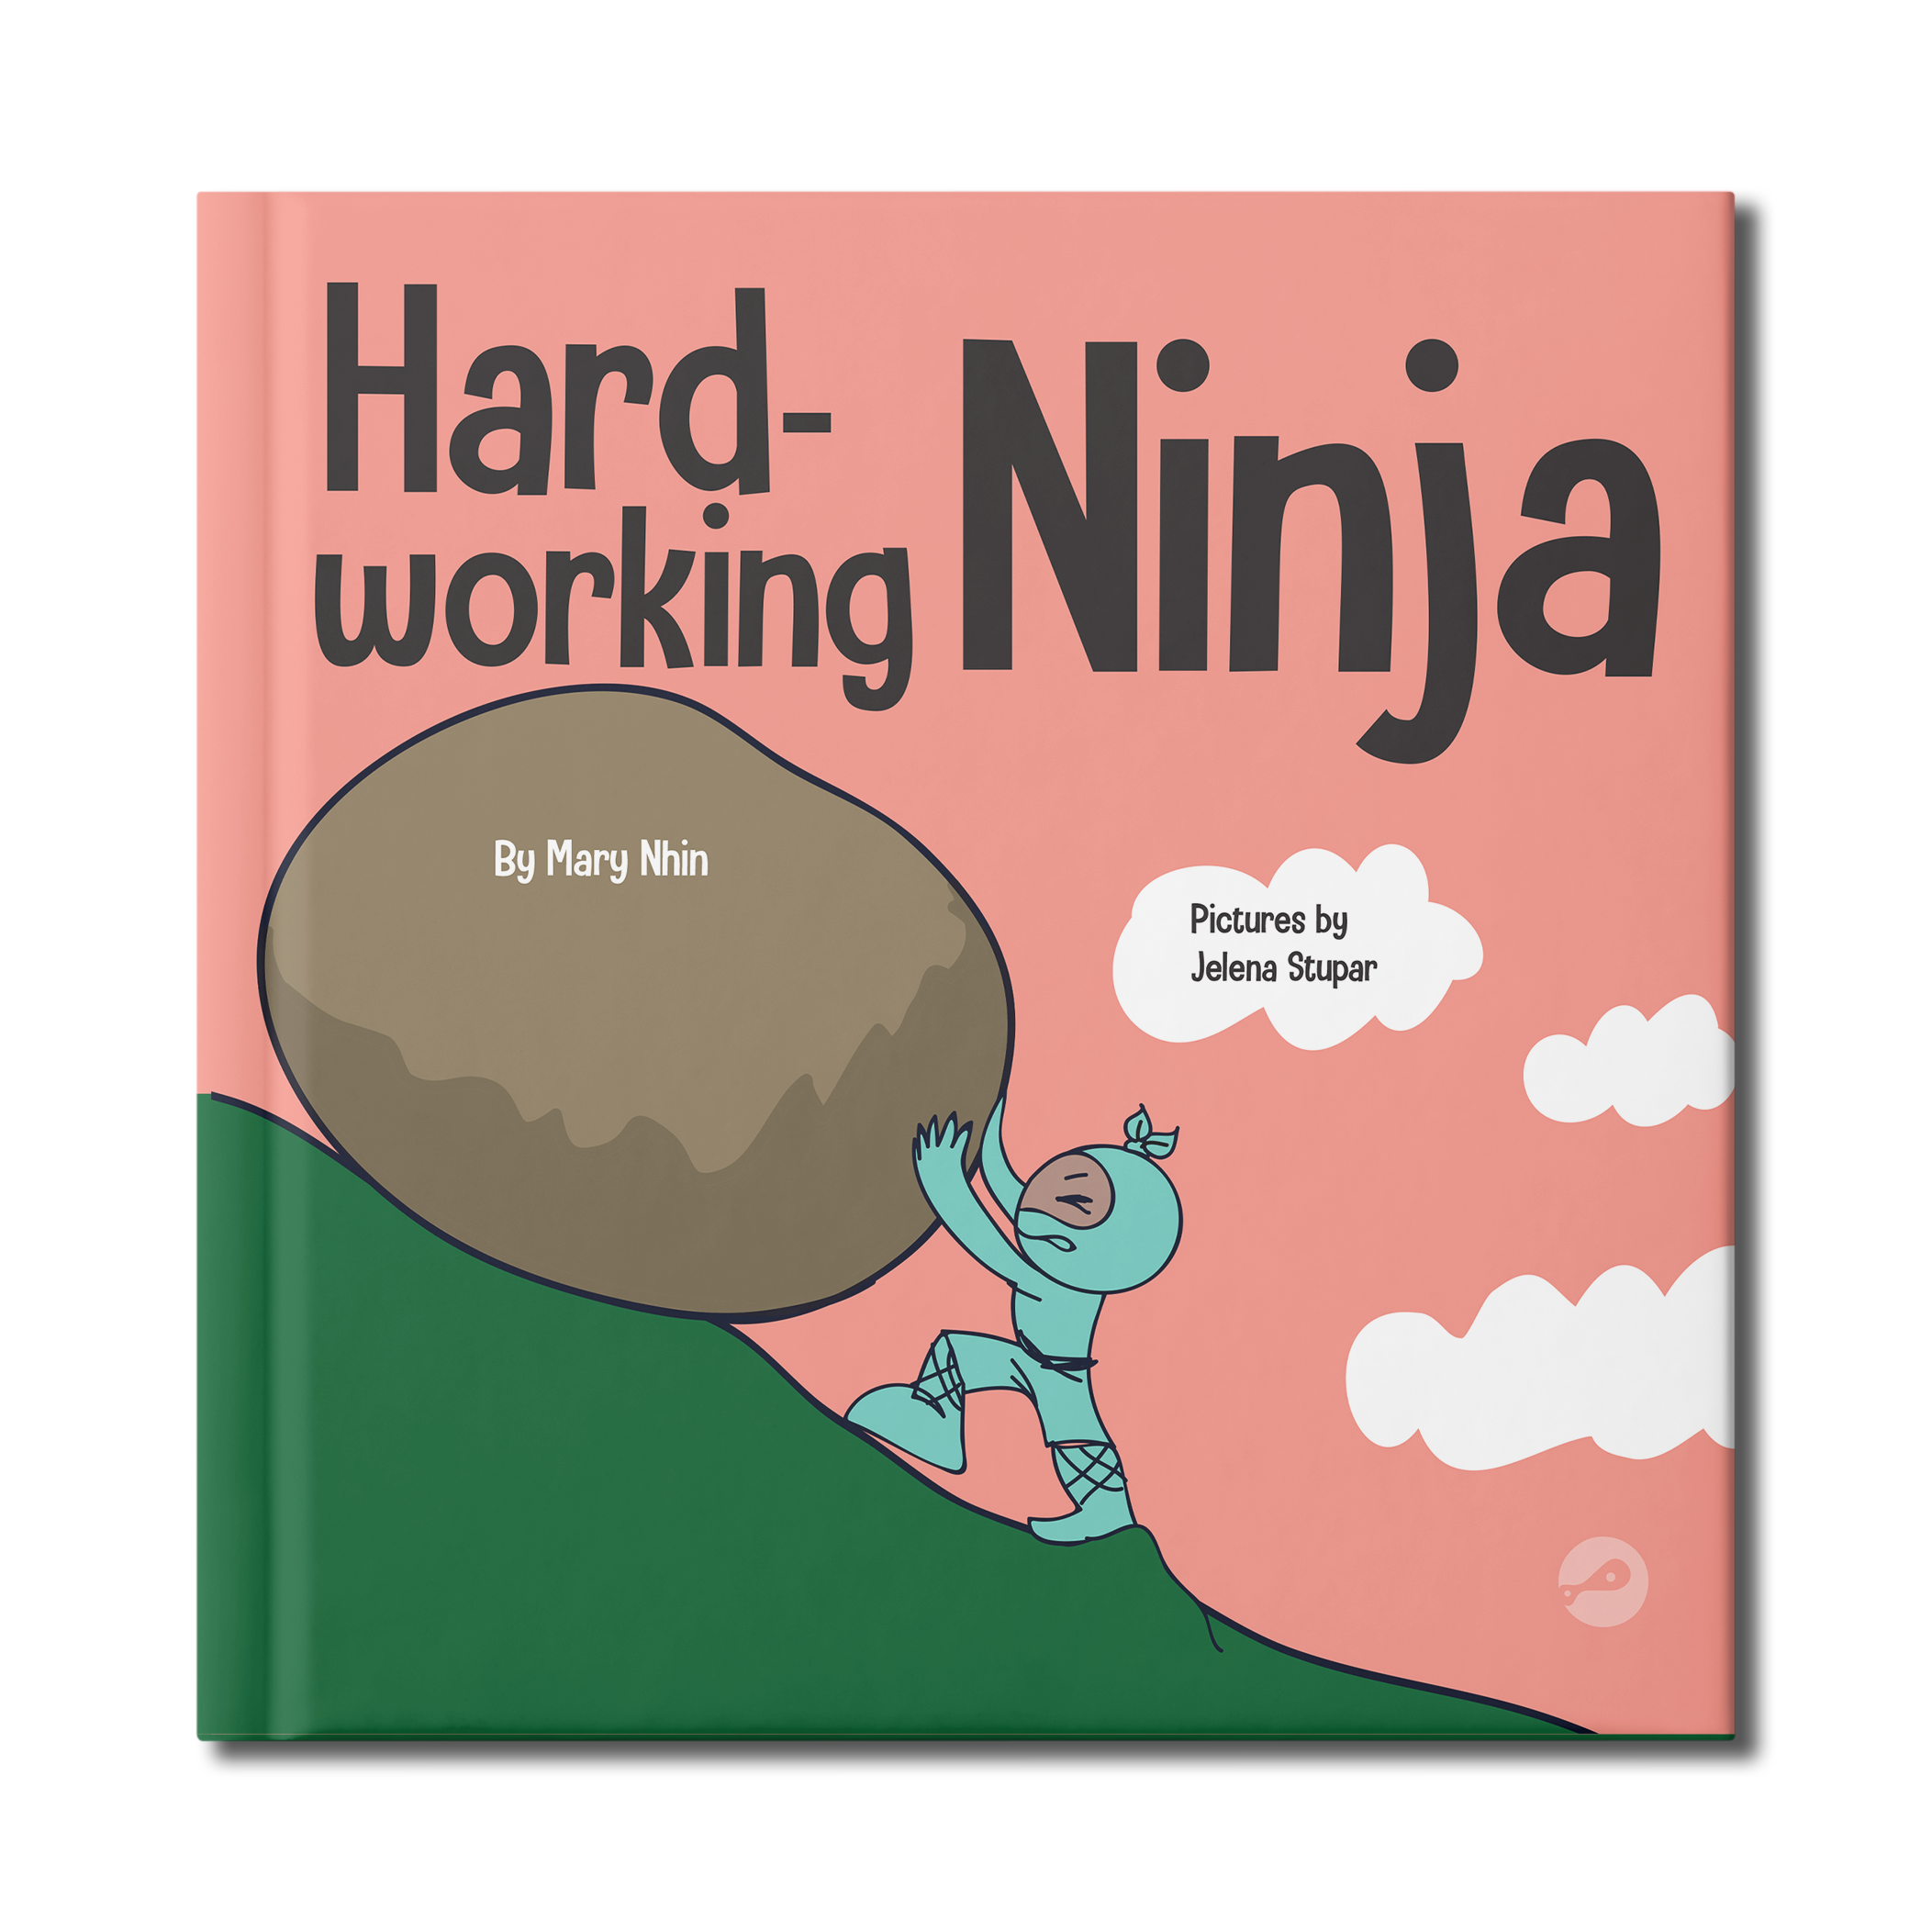 Scissors on Strike Paperback Book – Ninja Life Hacks - Growth Mindset